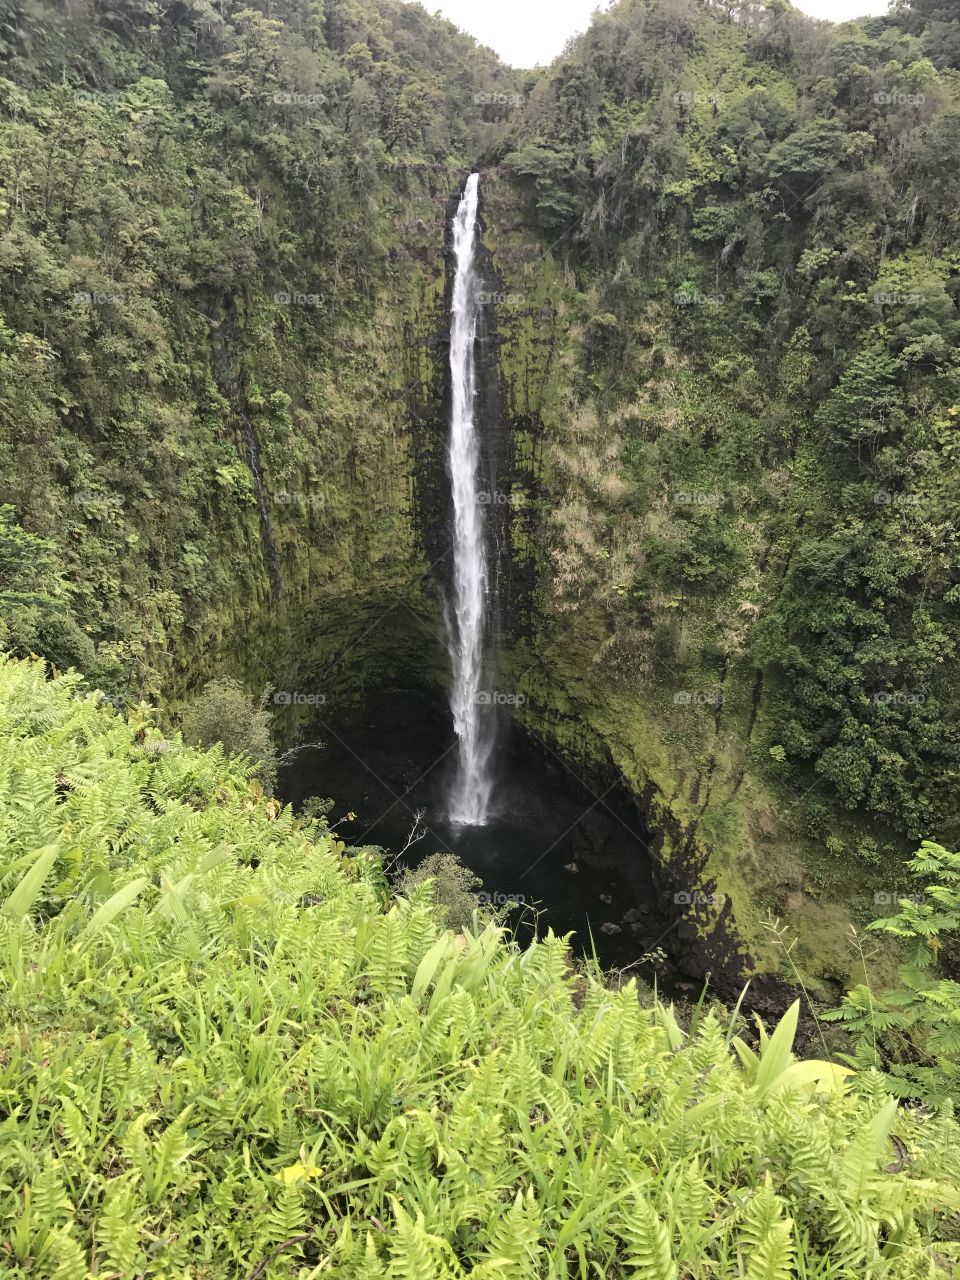 ʻAkaka Falls